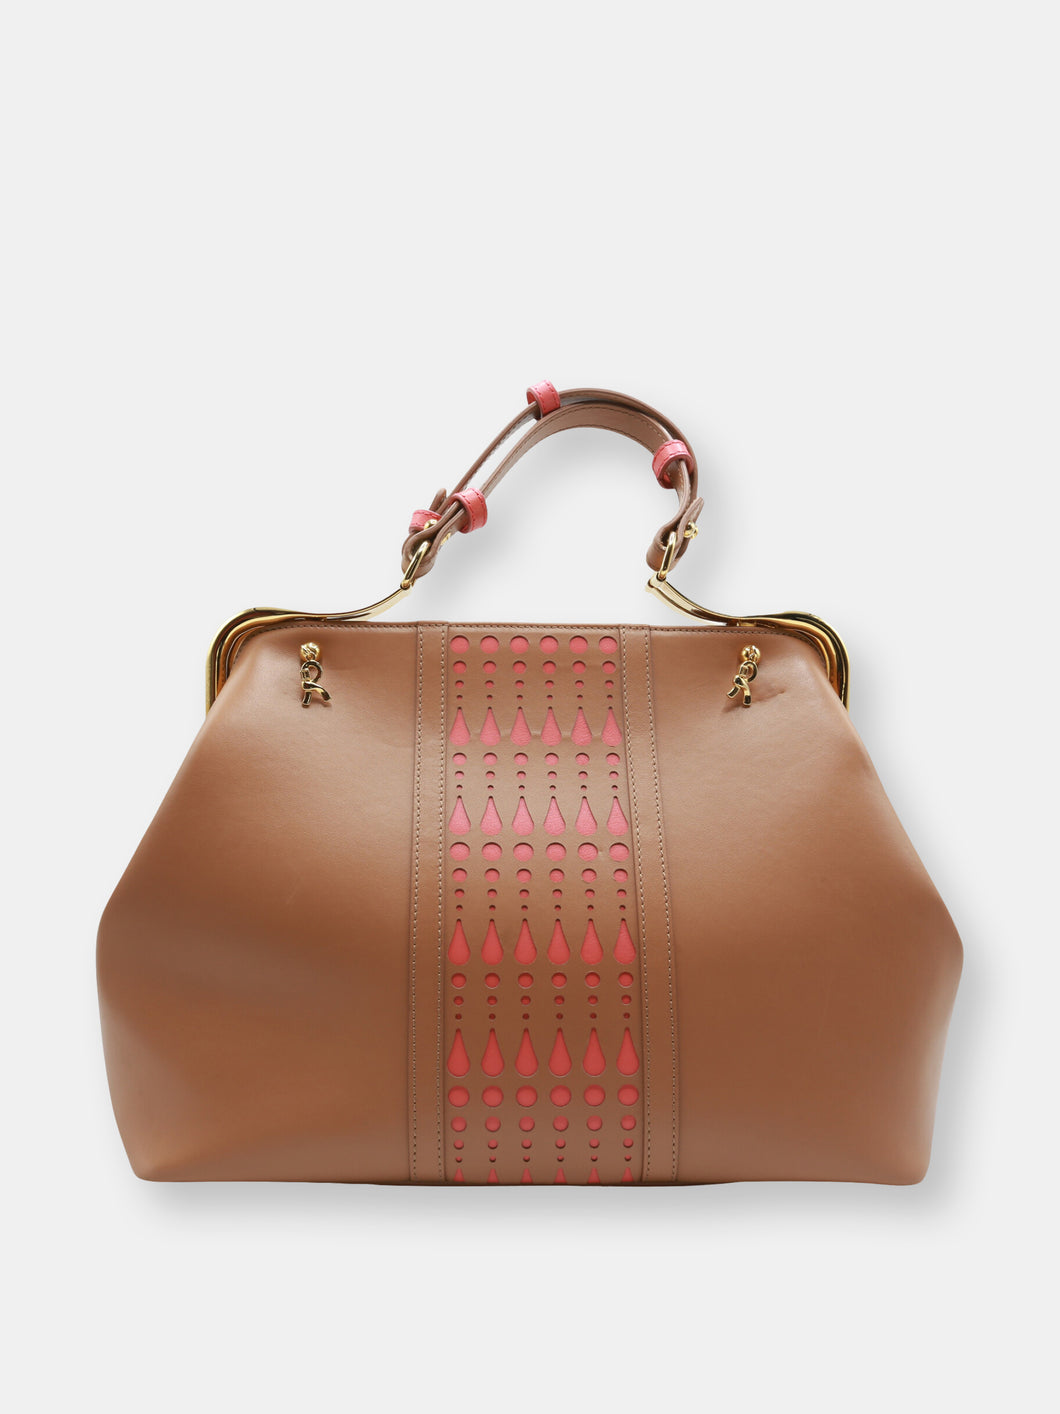 Roberta di Camerino Women's Perforated Top Handle Bag Leather Top-Handle Tote